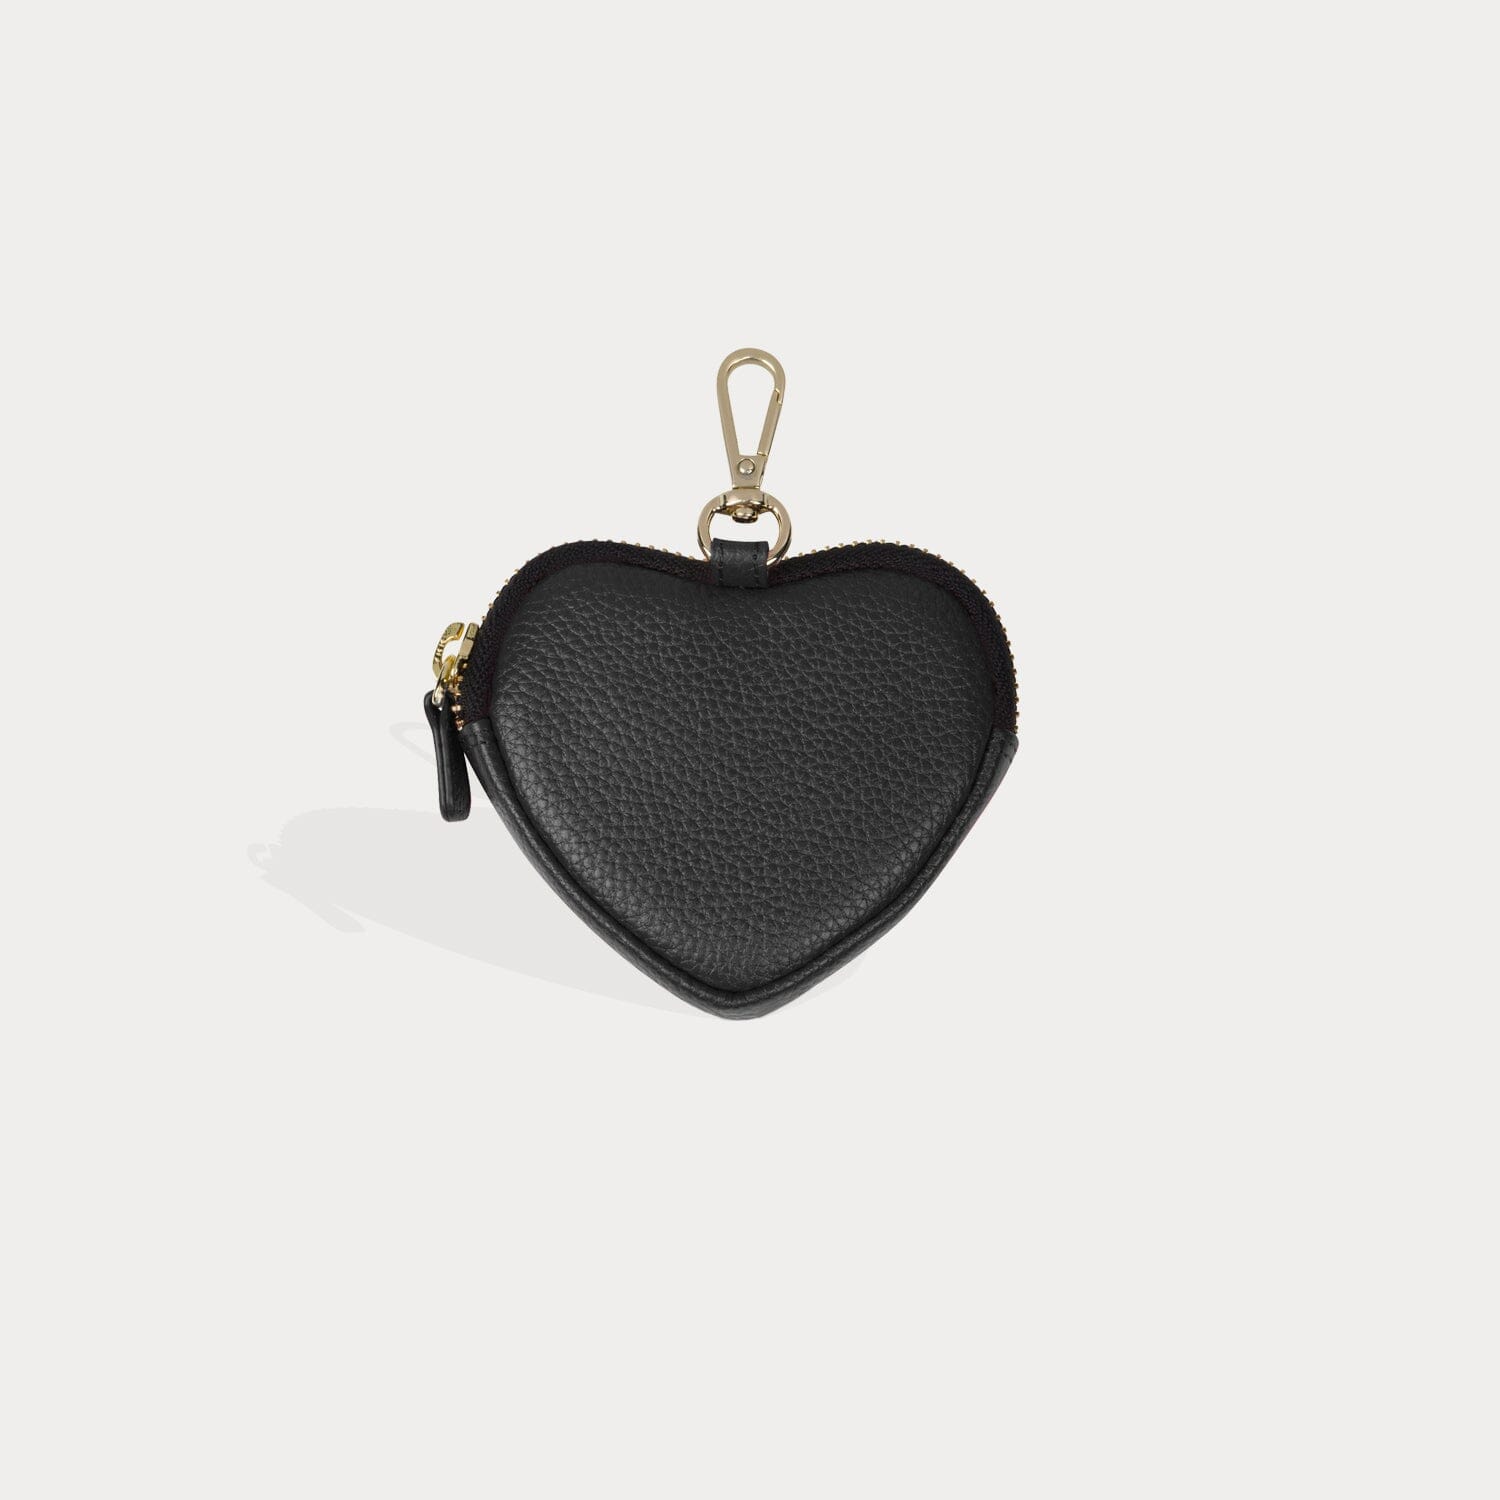 Longchamp 3D Pouch Black - Leather | Longchamp US